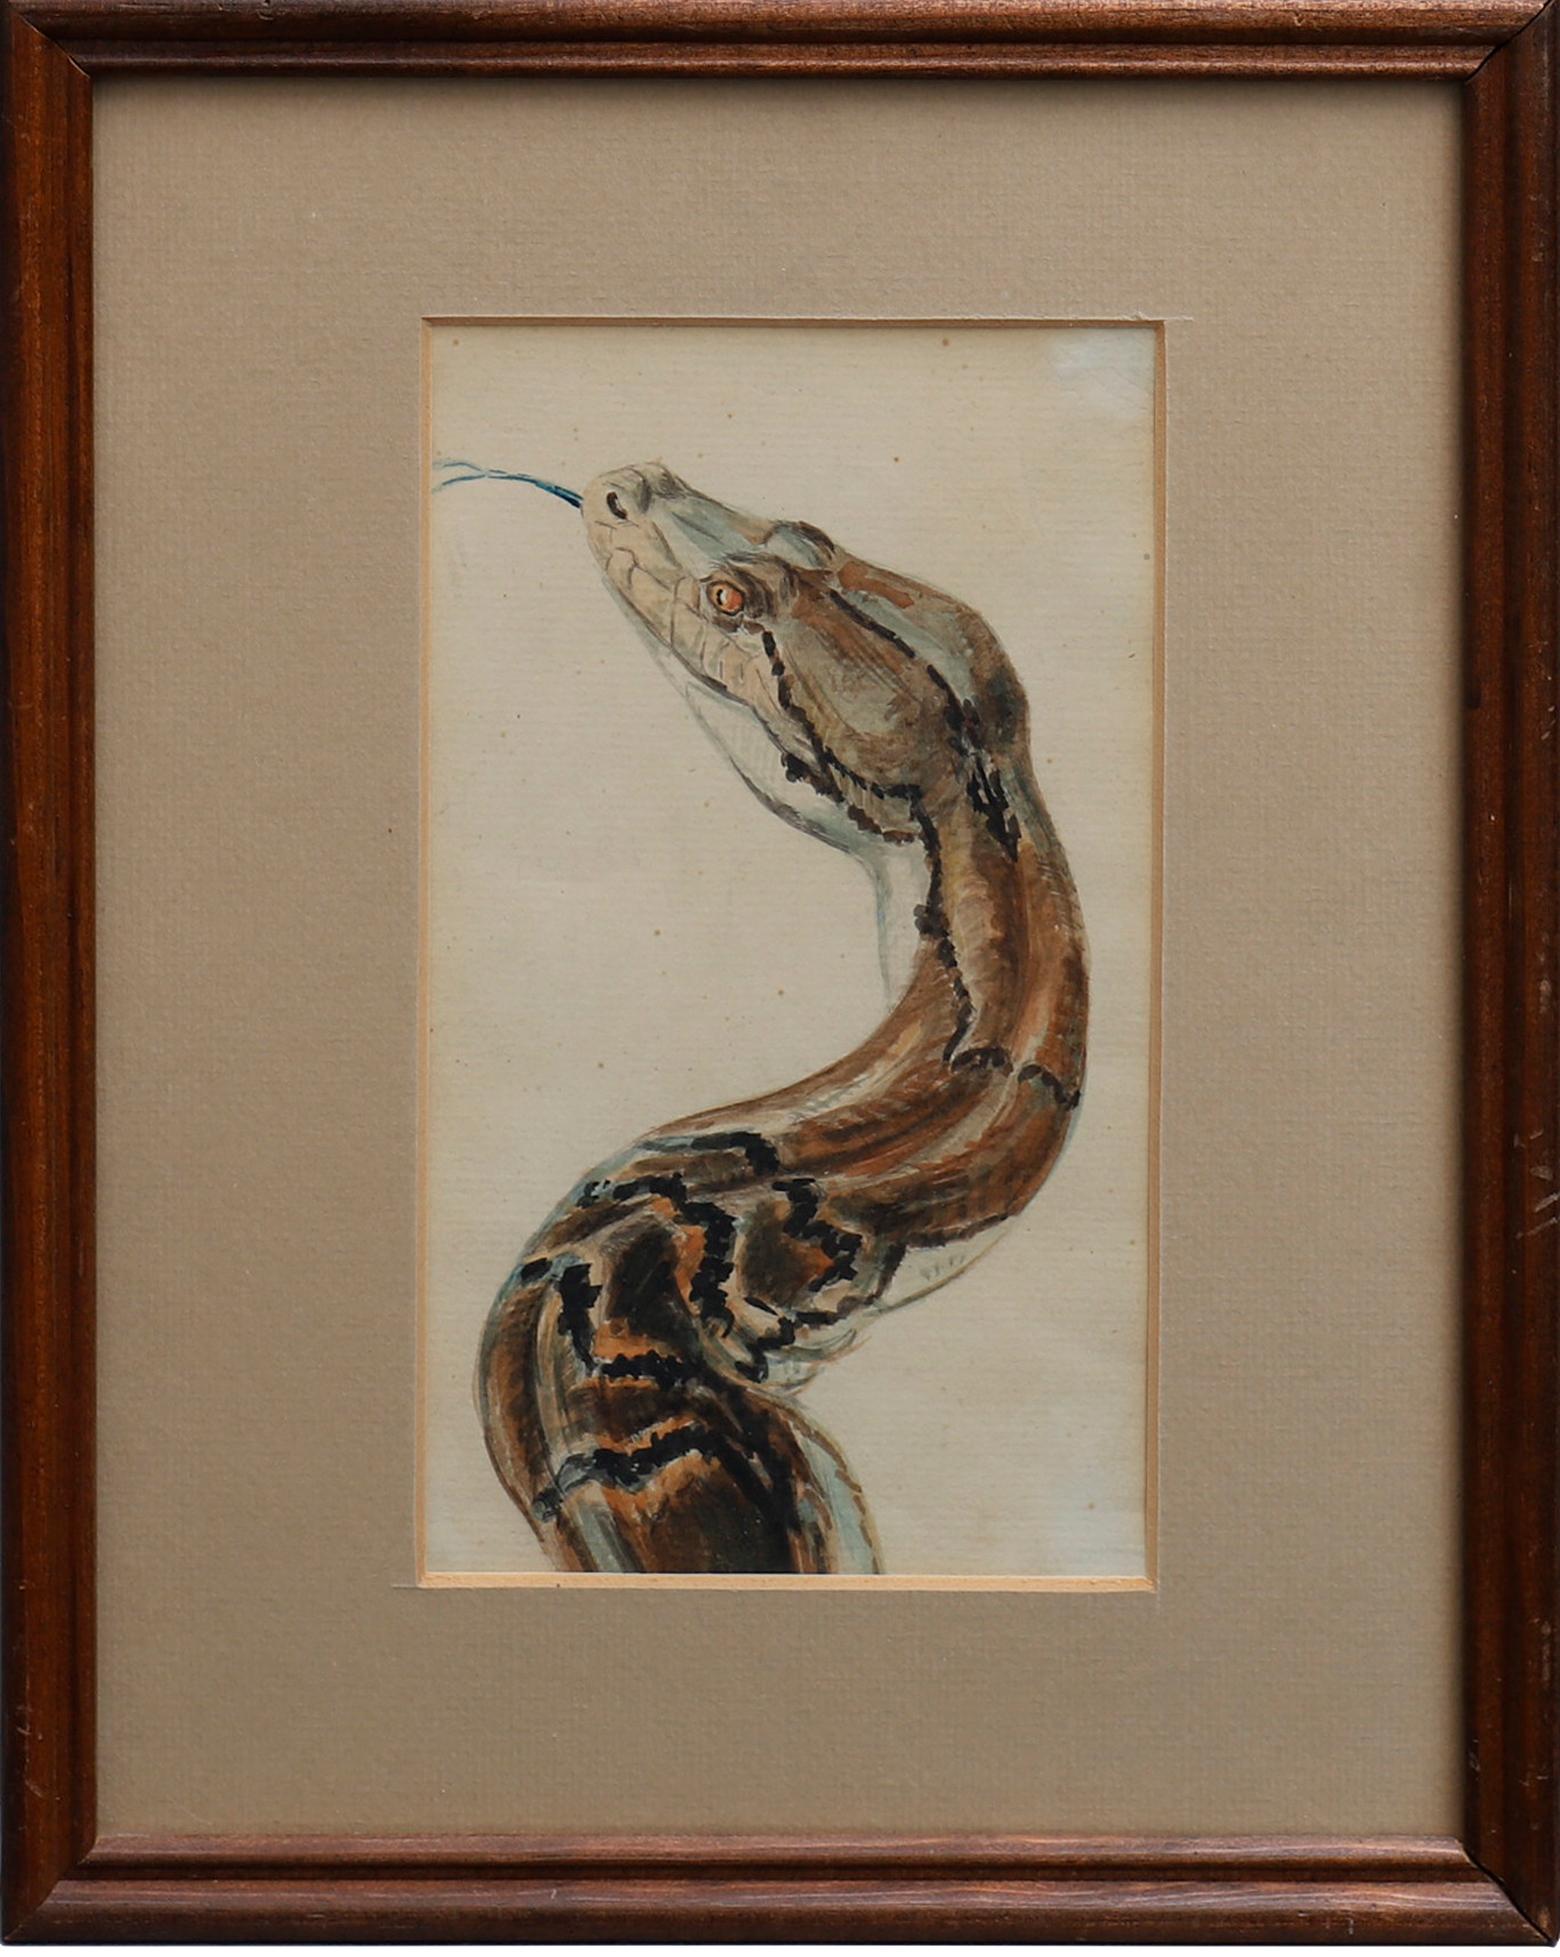 Aquarelle d'un python réticulé du zoo de Copenhague début 1900 siècle
Texte : Aquarelle originale. Propriété de l'ancien directeur du zoo de Copenhague, Axel Rewentlow. 
Le python réticulé (Malayopython reticulatus) est une espèce de serpents de